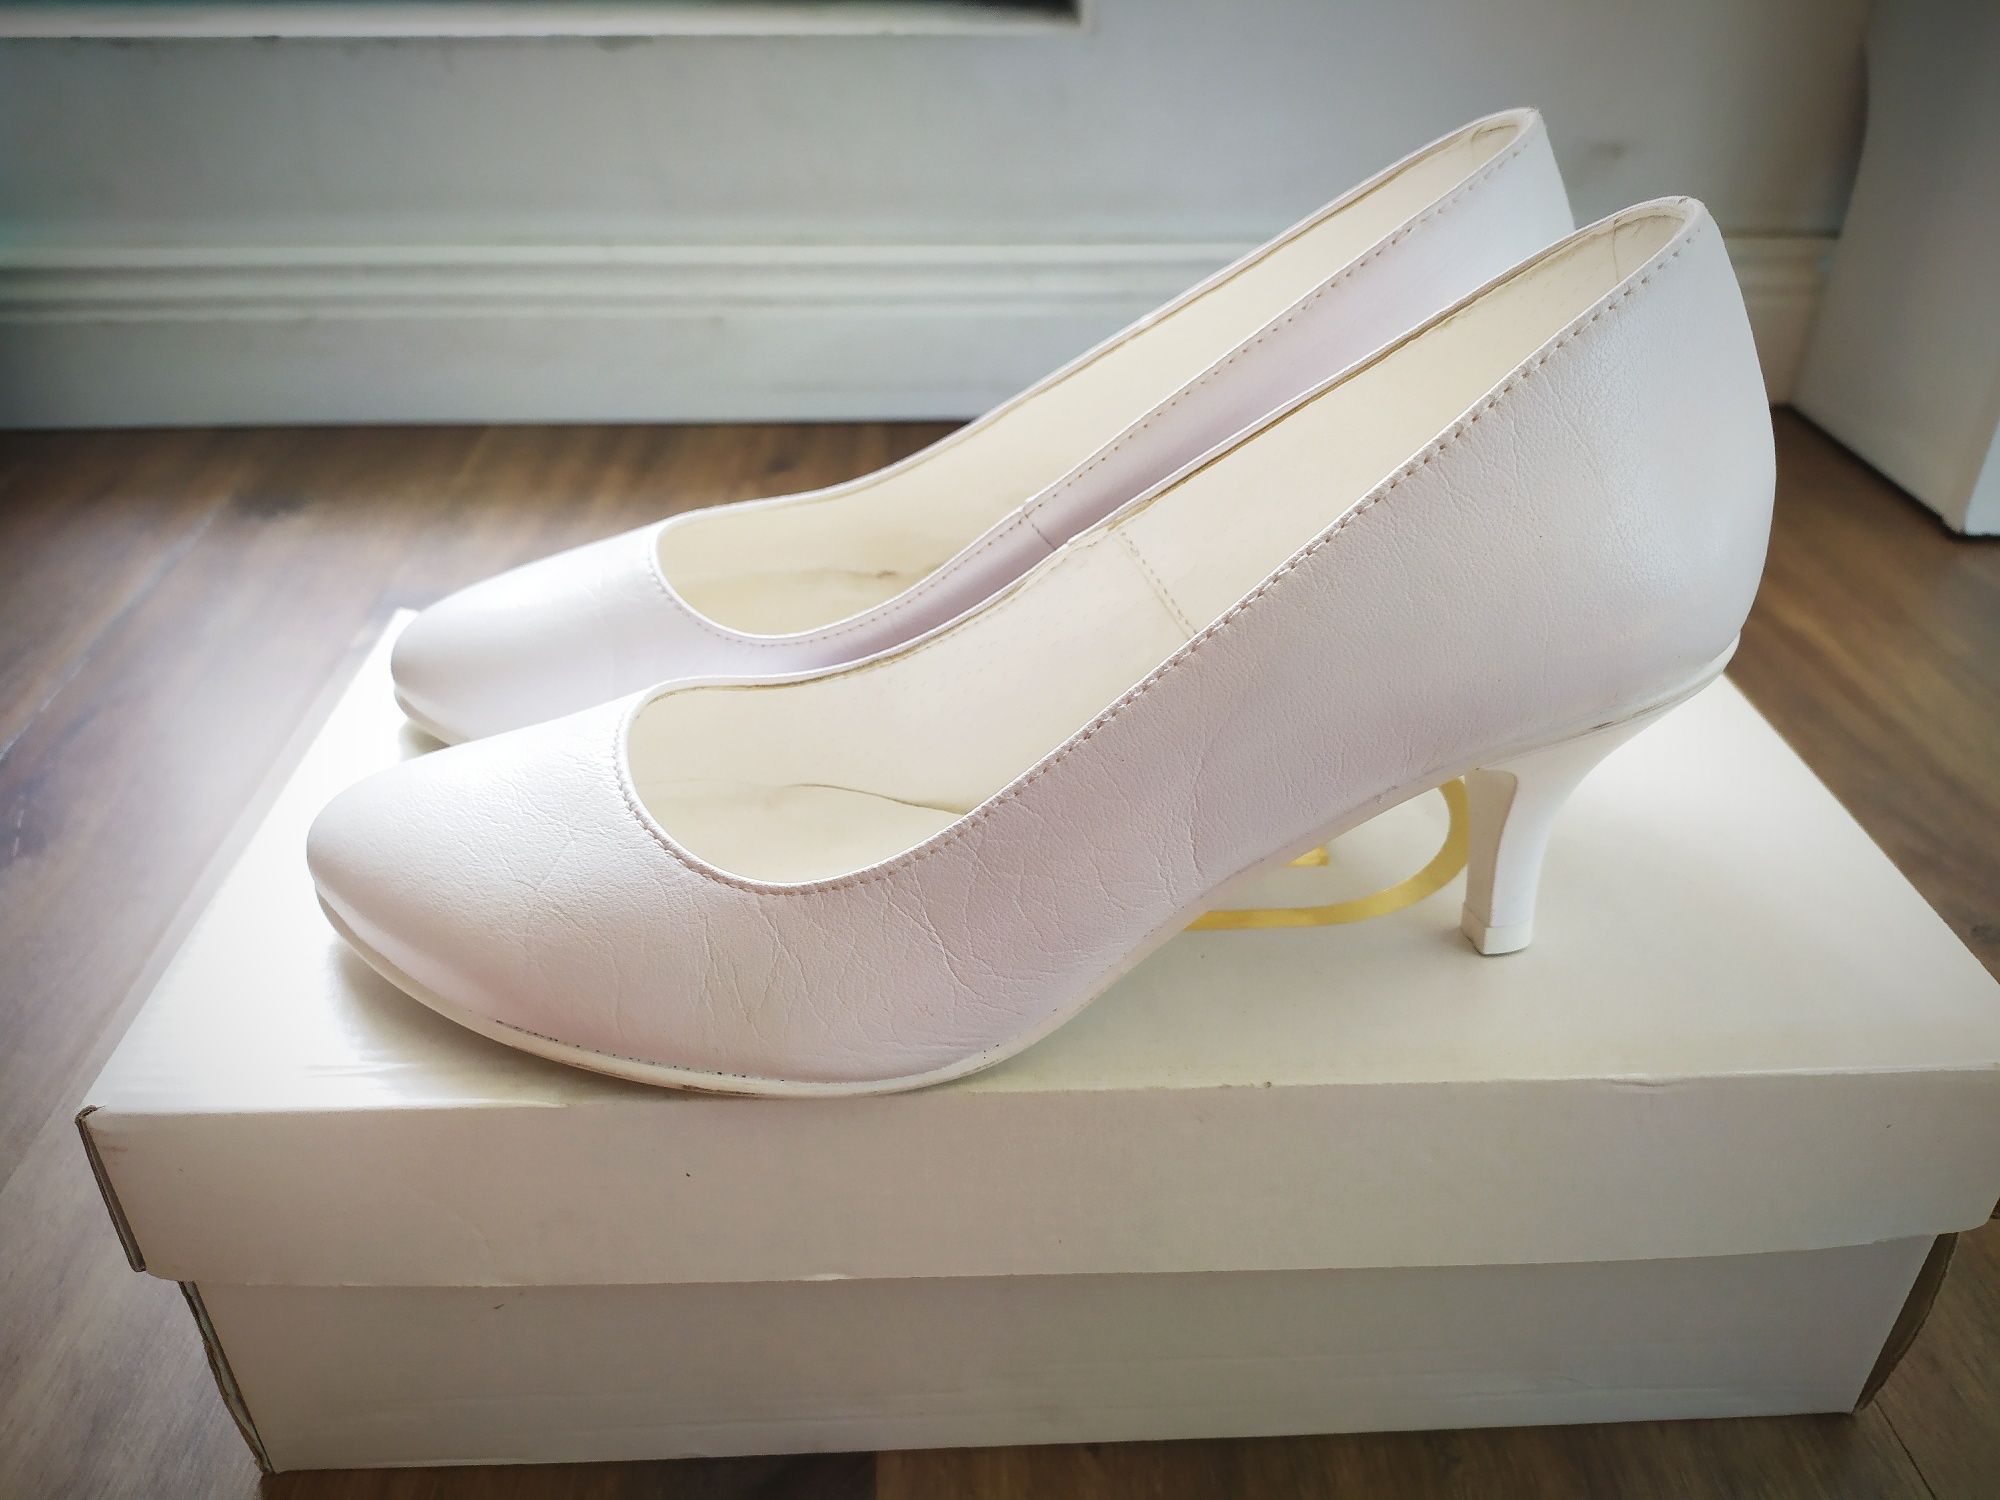 Buty białe ślubne WITT nieużywane rozm 37model 105